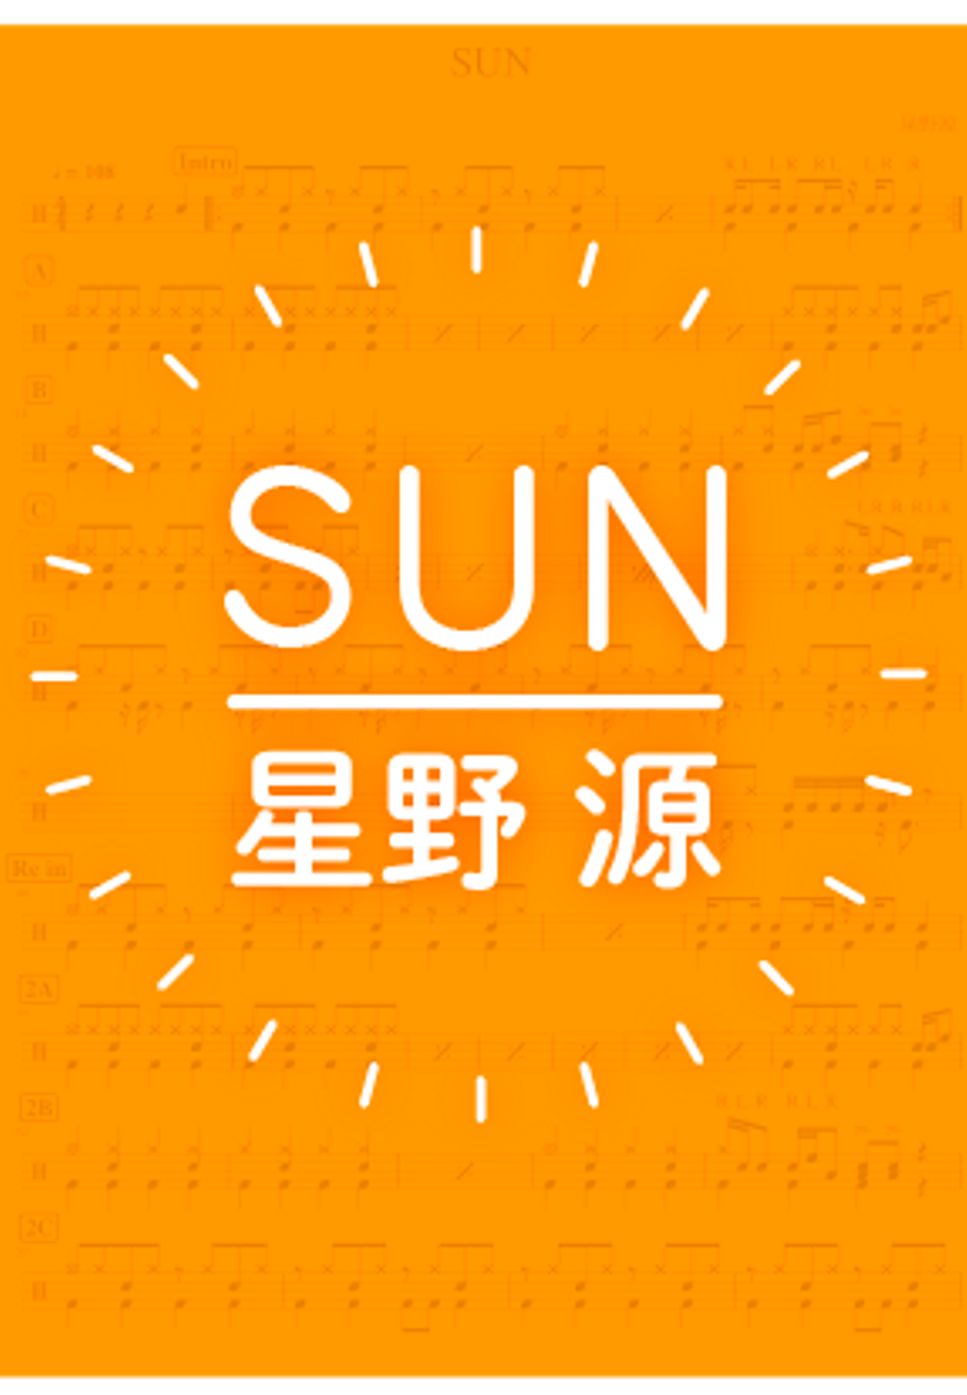 星野源 - SUN by DSU